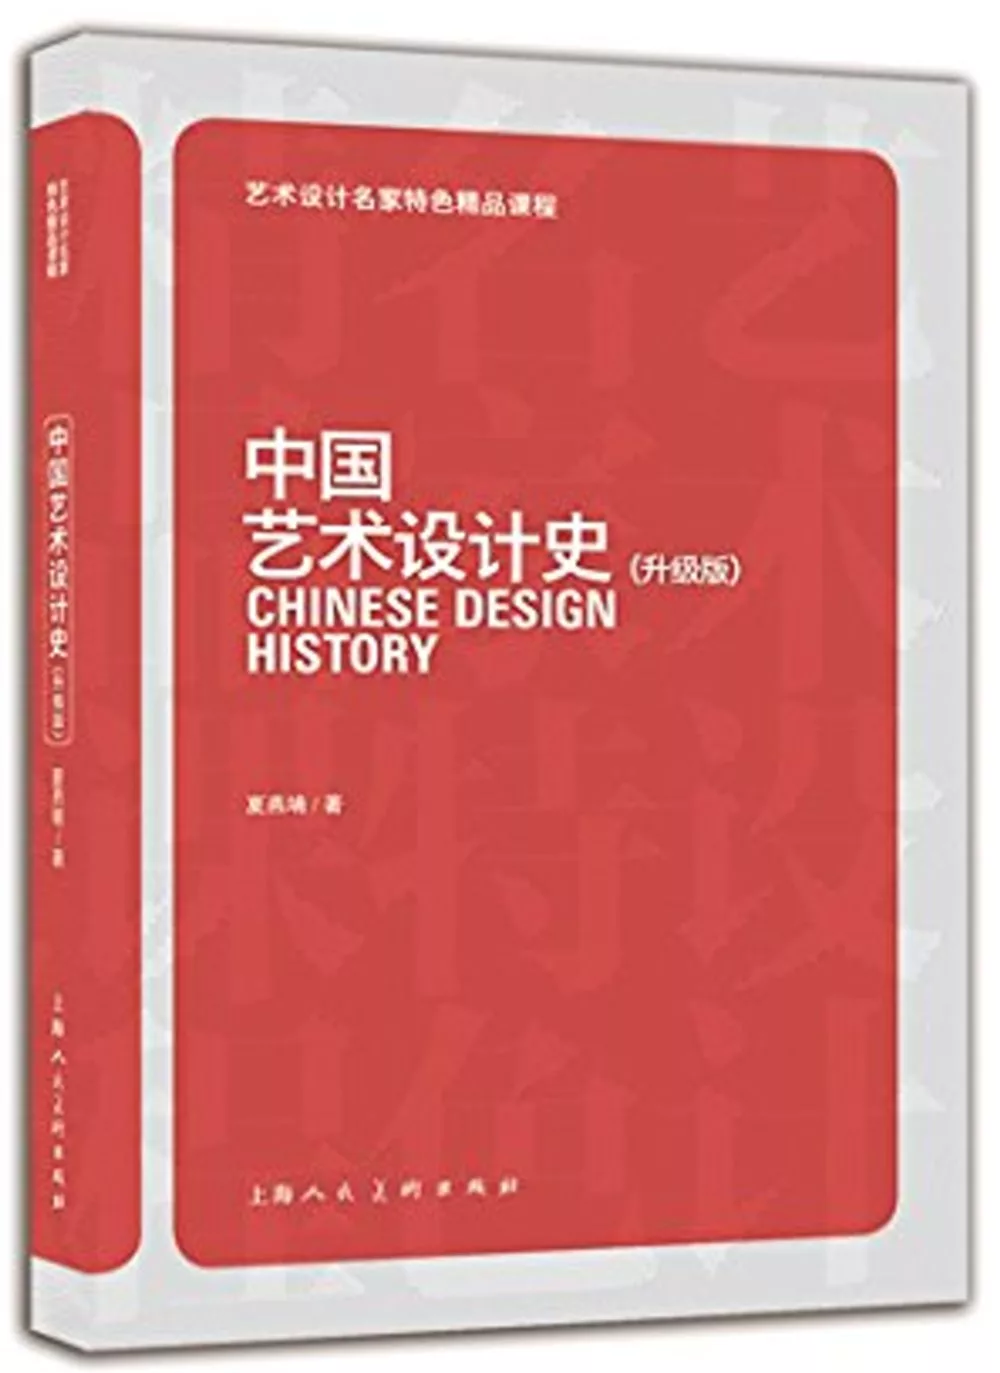 中國藝術設計史(升級版)